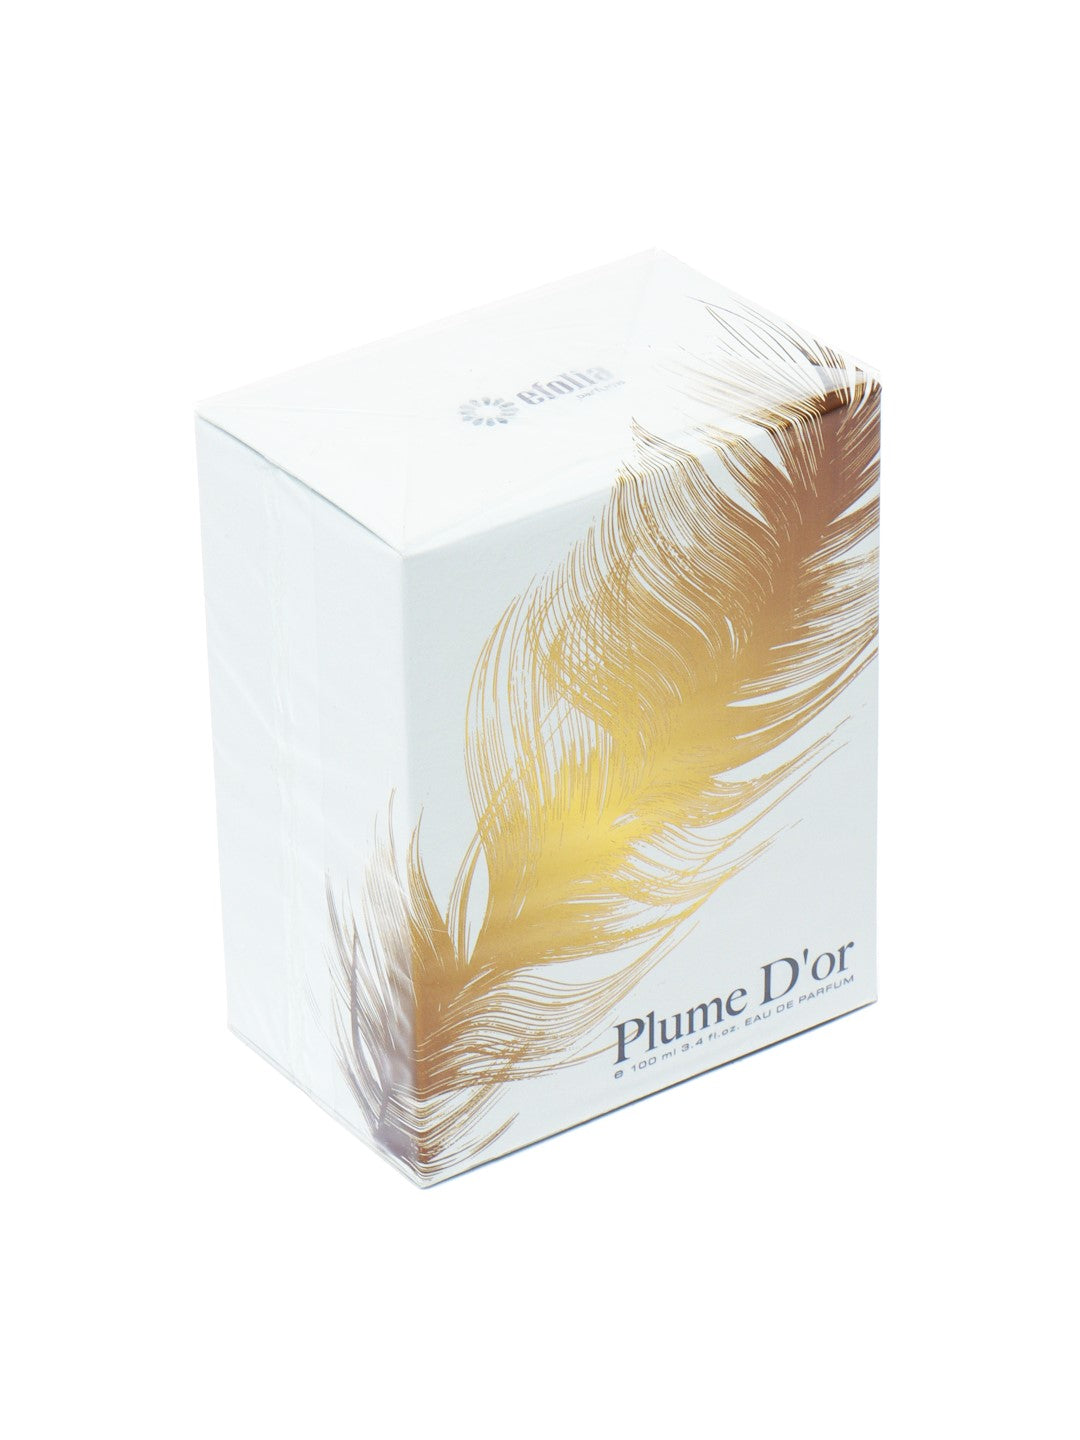 Efolia Plume D'or Unisex Eau De Parfum 100ml